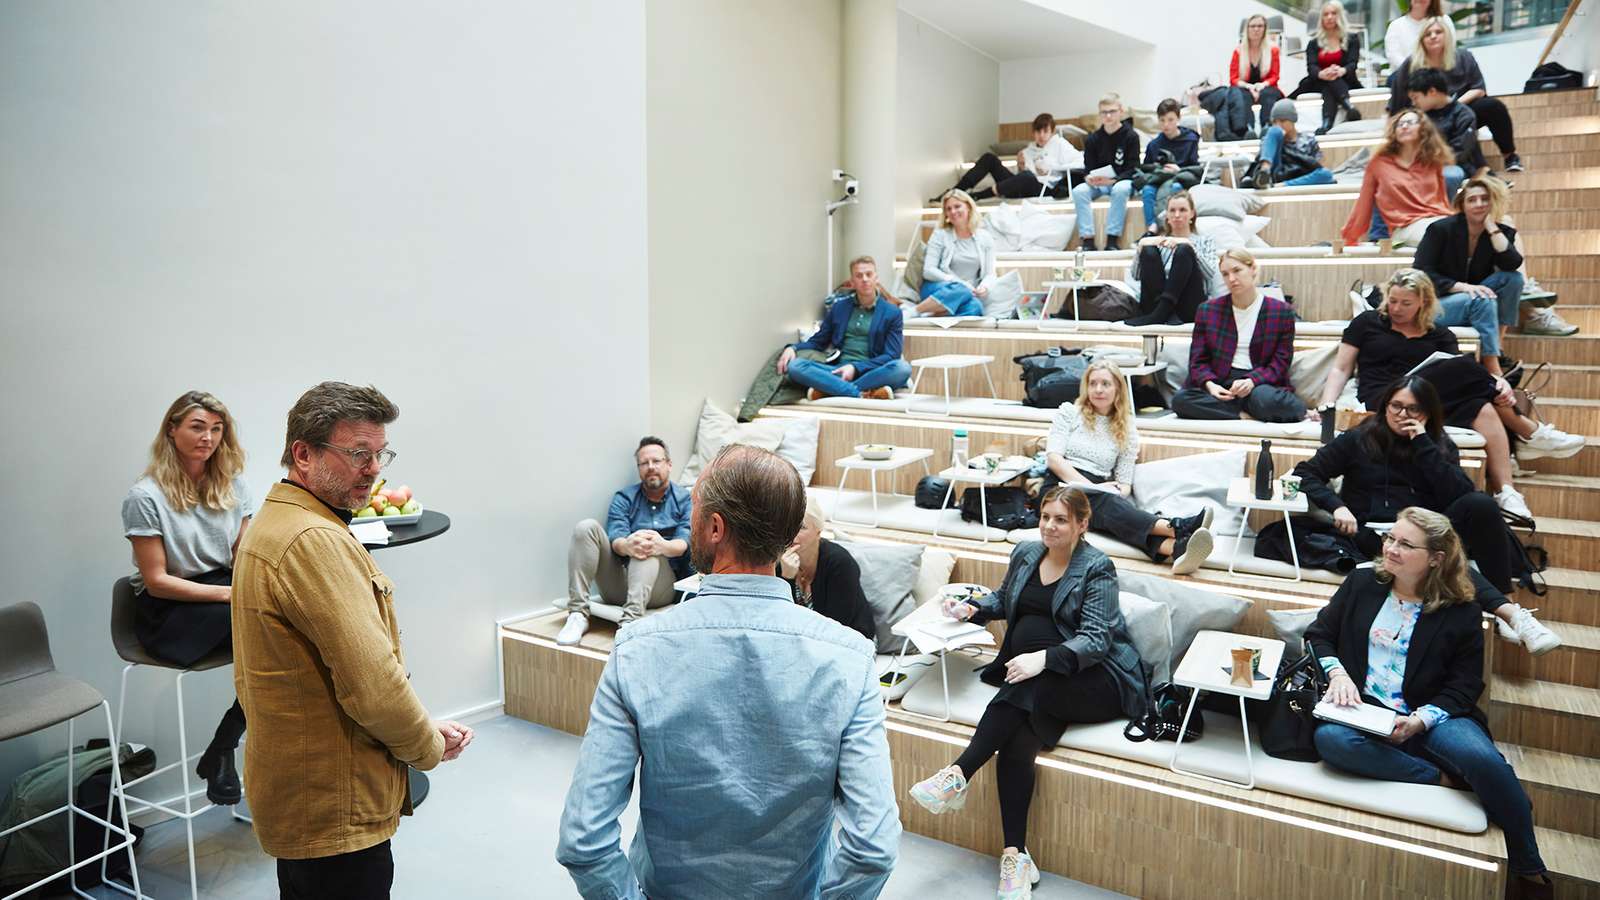 Två personer står och pratar framför en publik, utspridd i en trappliknande läktare.